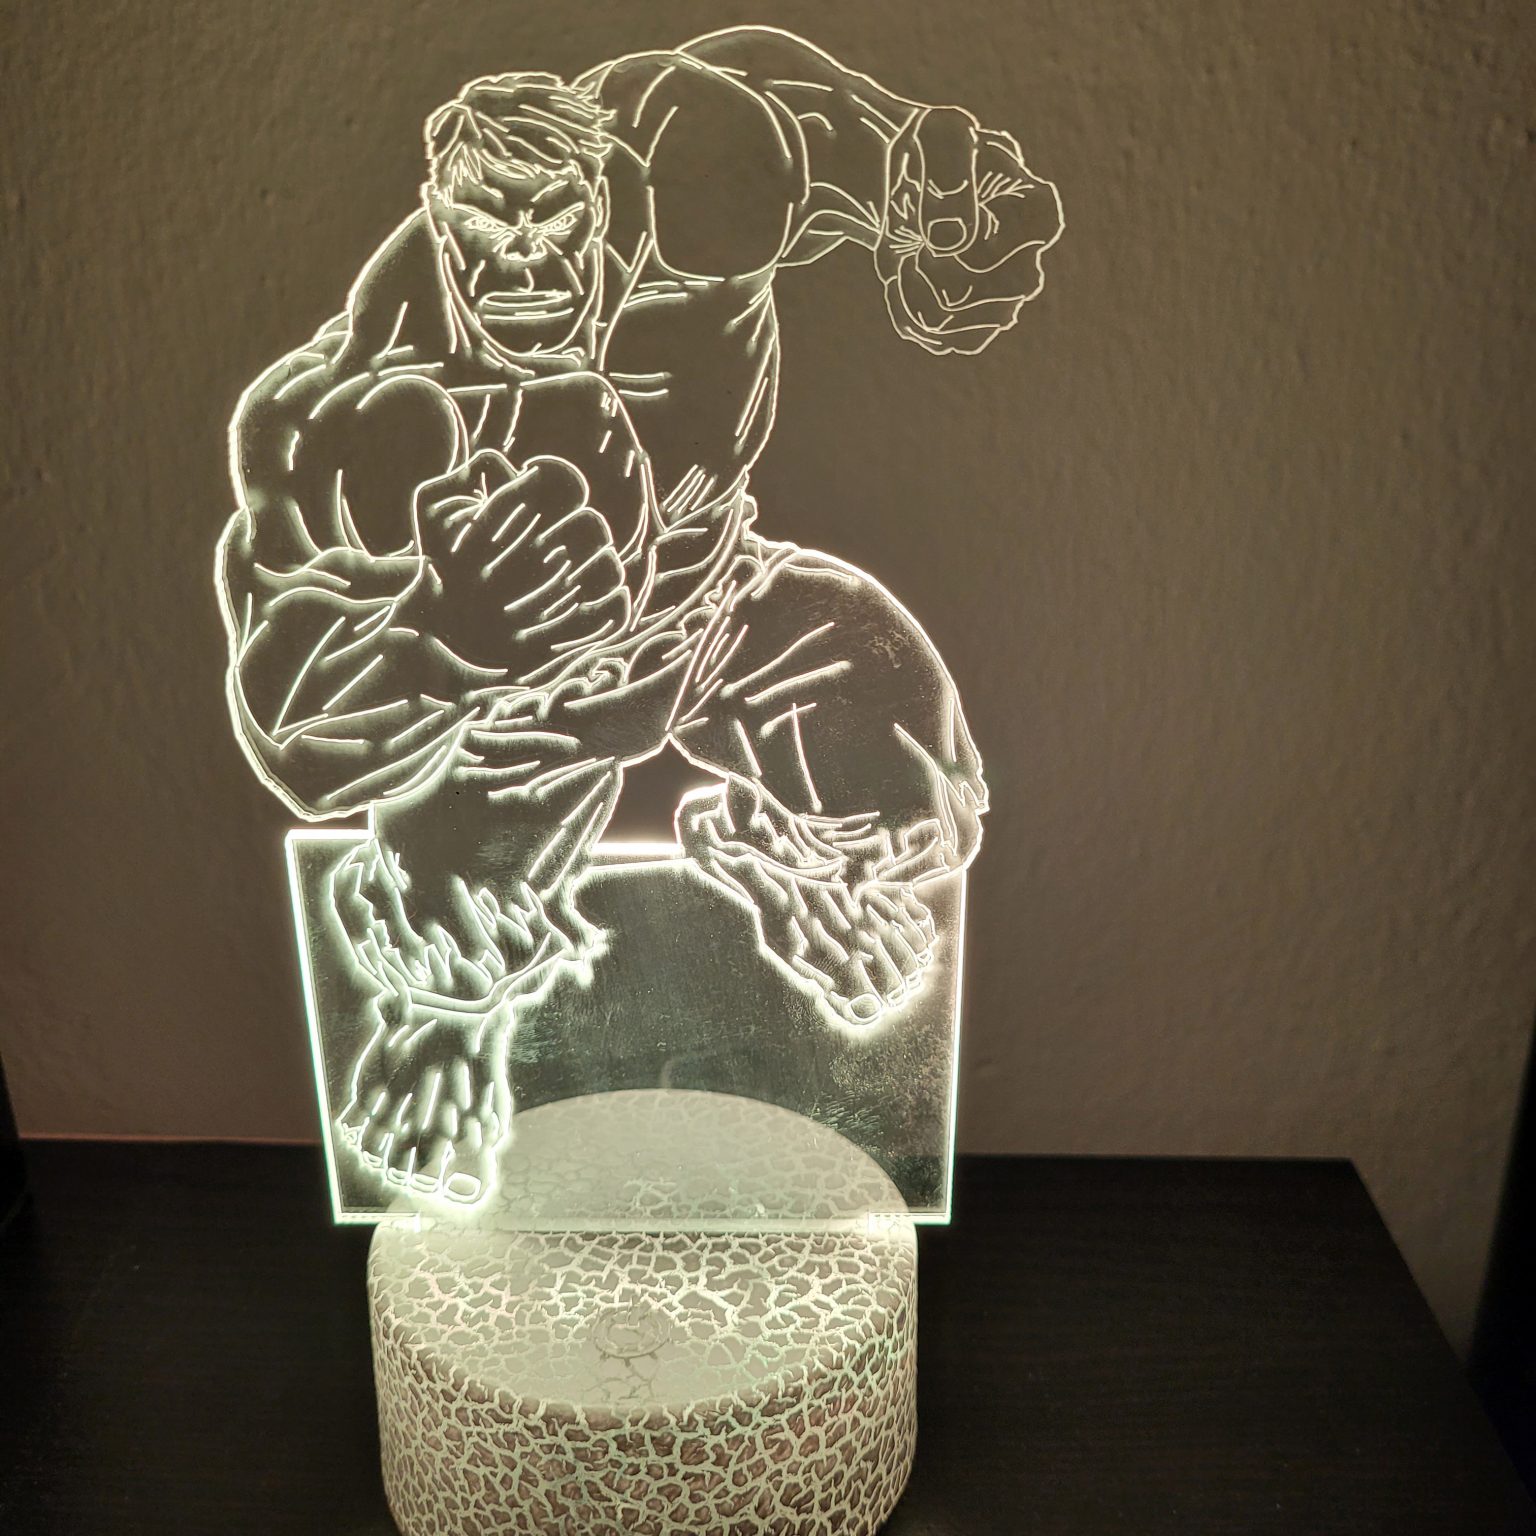 Φωτιστικό Plexiglass LED RGB Hulk